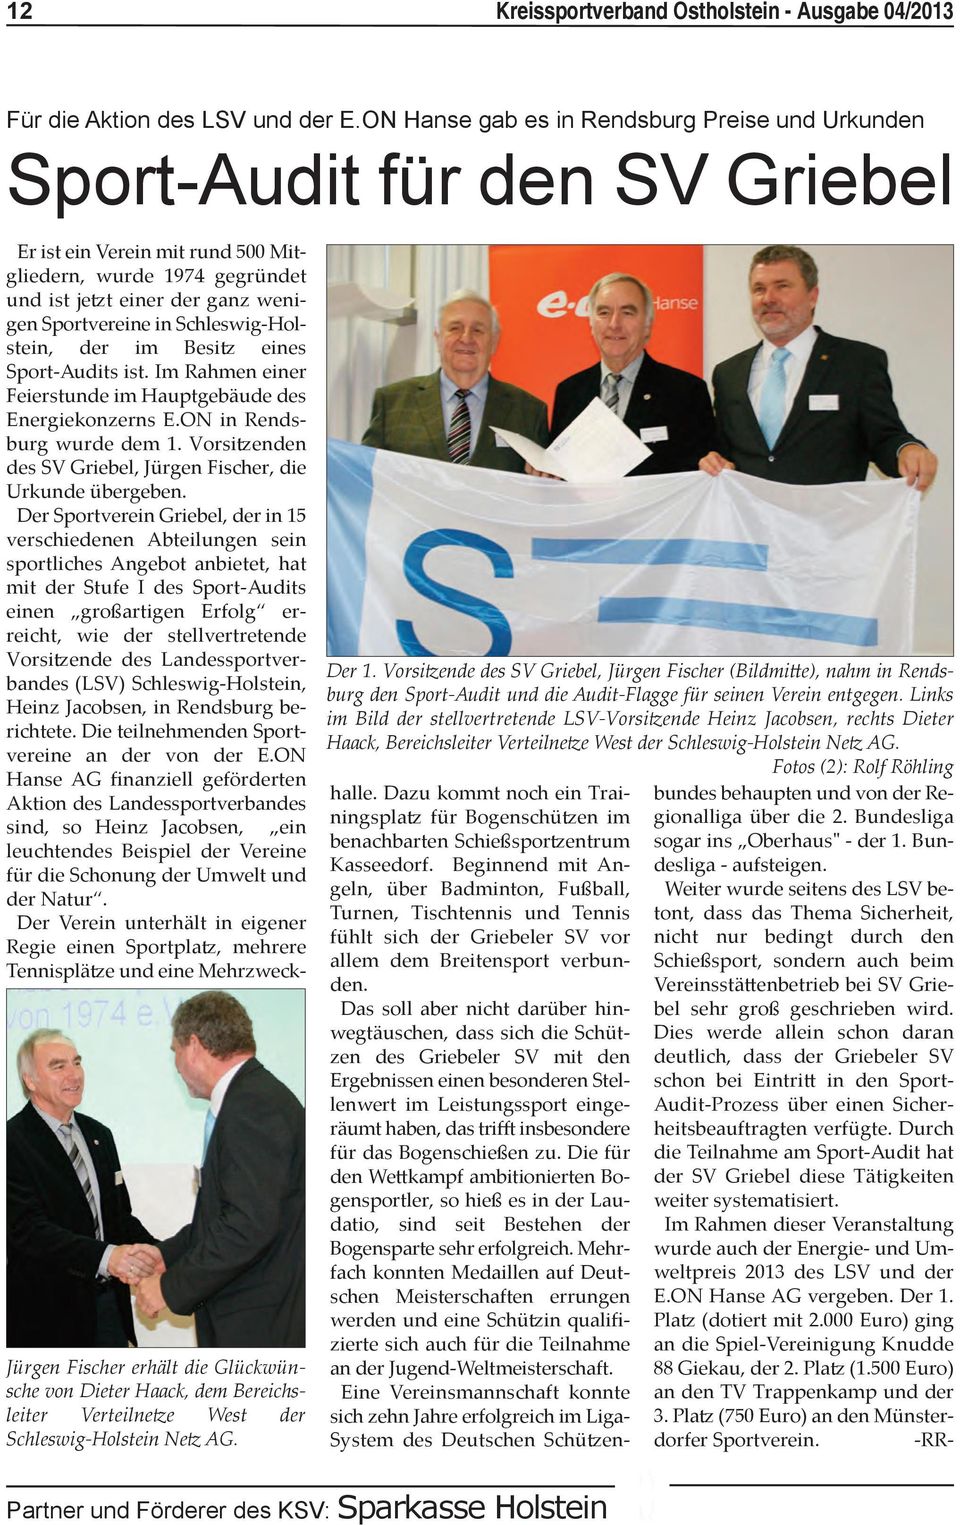 Netz AG. Der 1. Vorsitzende des SV Griebel, Jürgen Fischer (Bildmitte), nahm in Rendsburg den Sport-Audit und die Audit-Flagge für seinen Verein entgegen.